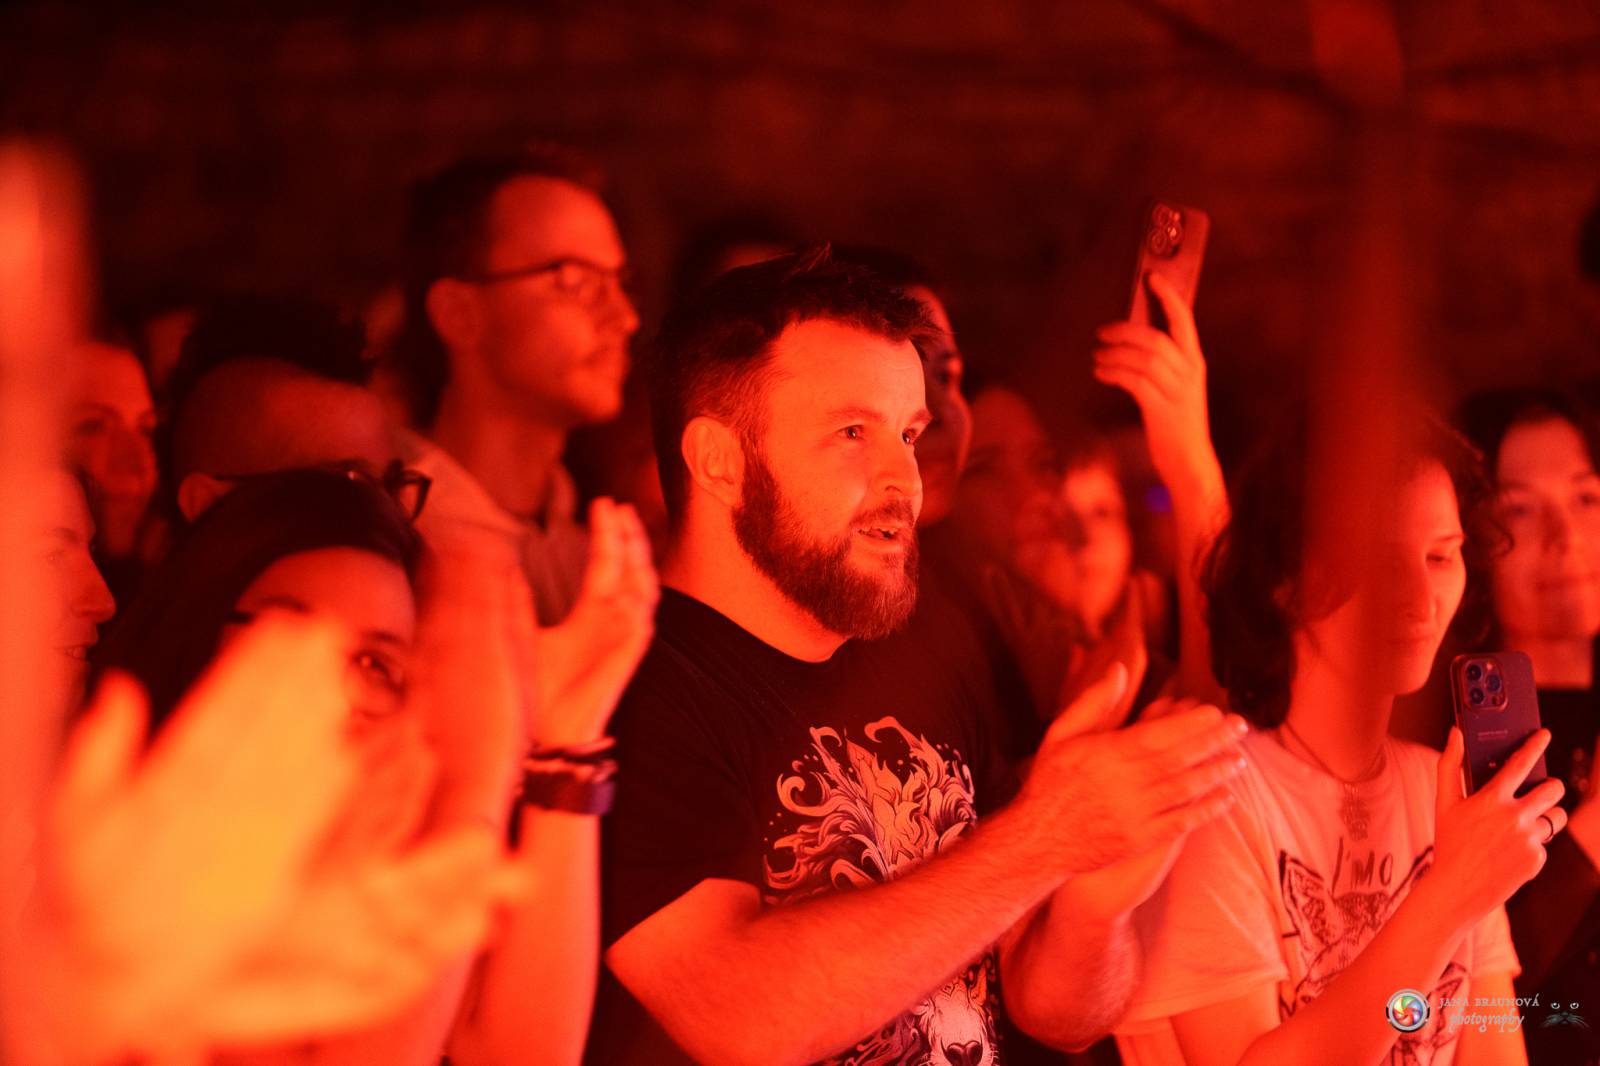 Halflives v Praze zakončili turné, čeští fanoušci je dojali k slzám